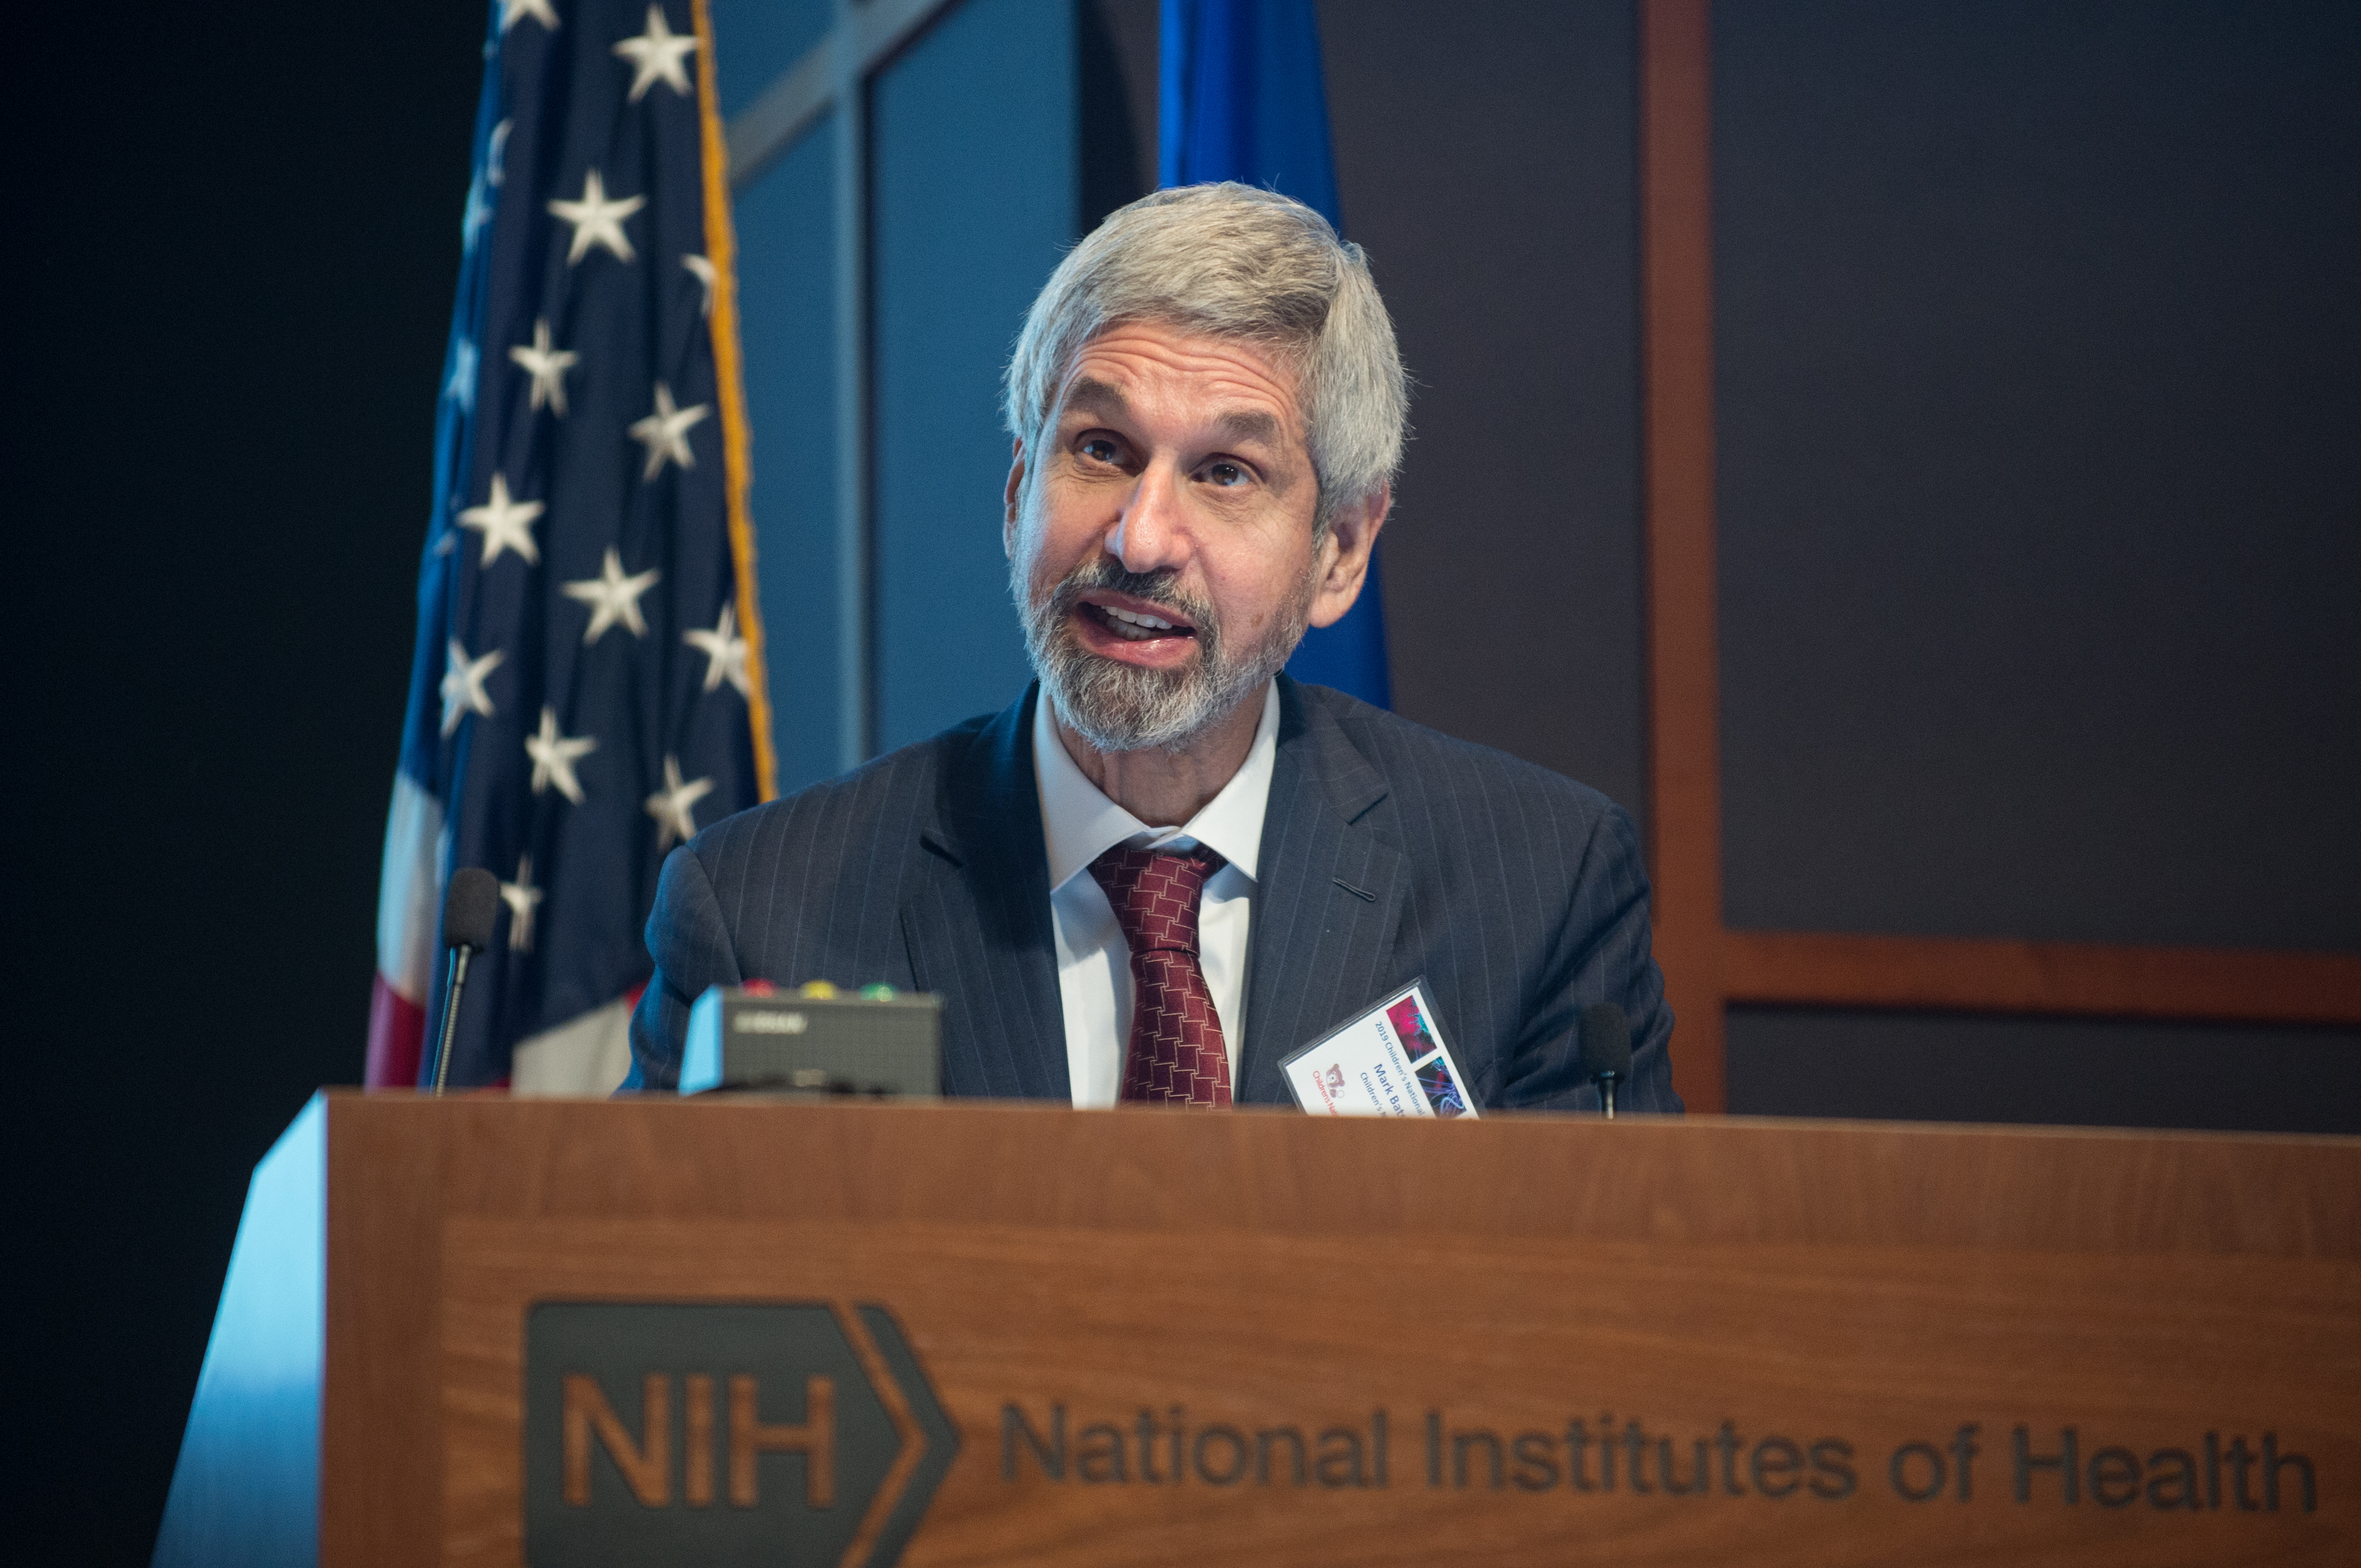 Dr. Batshaw speaking at NIAID Symposium